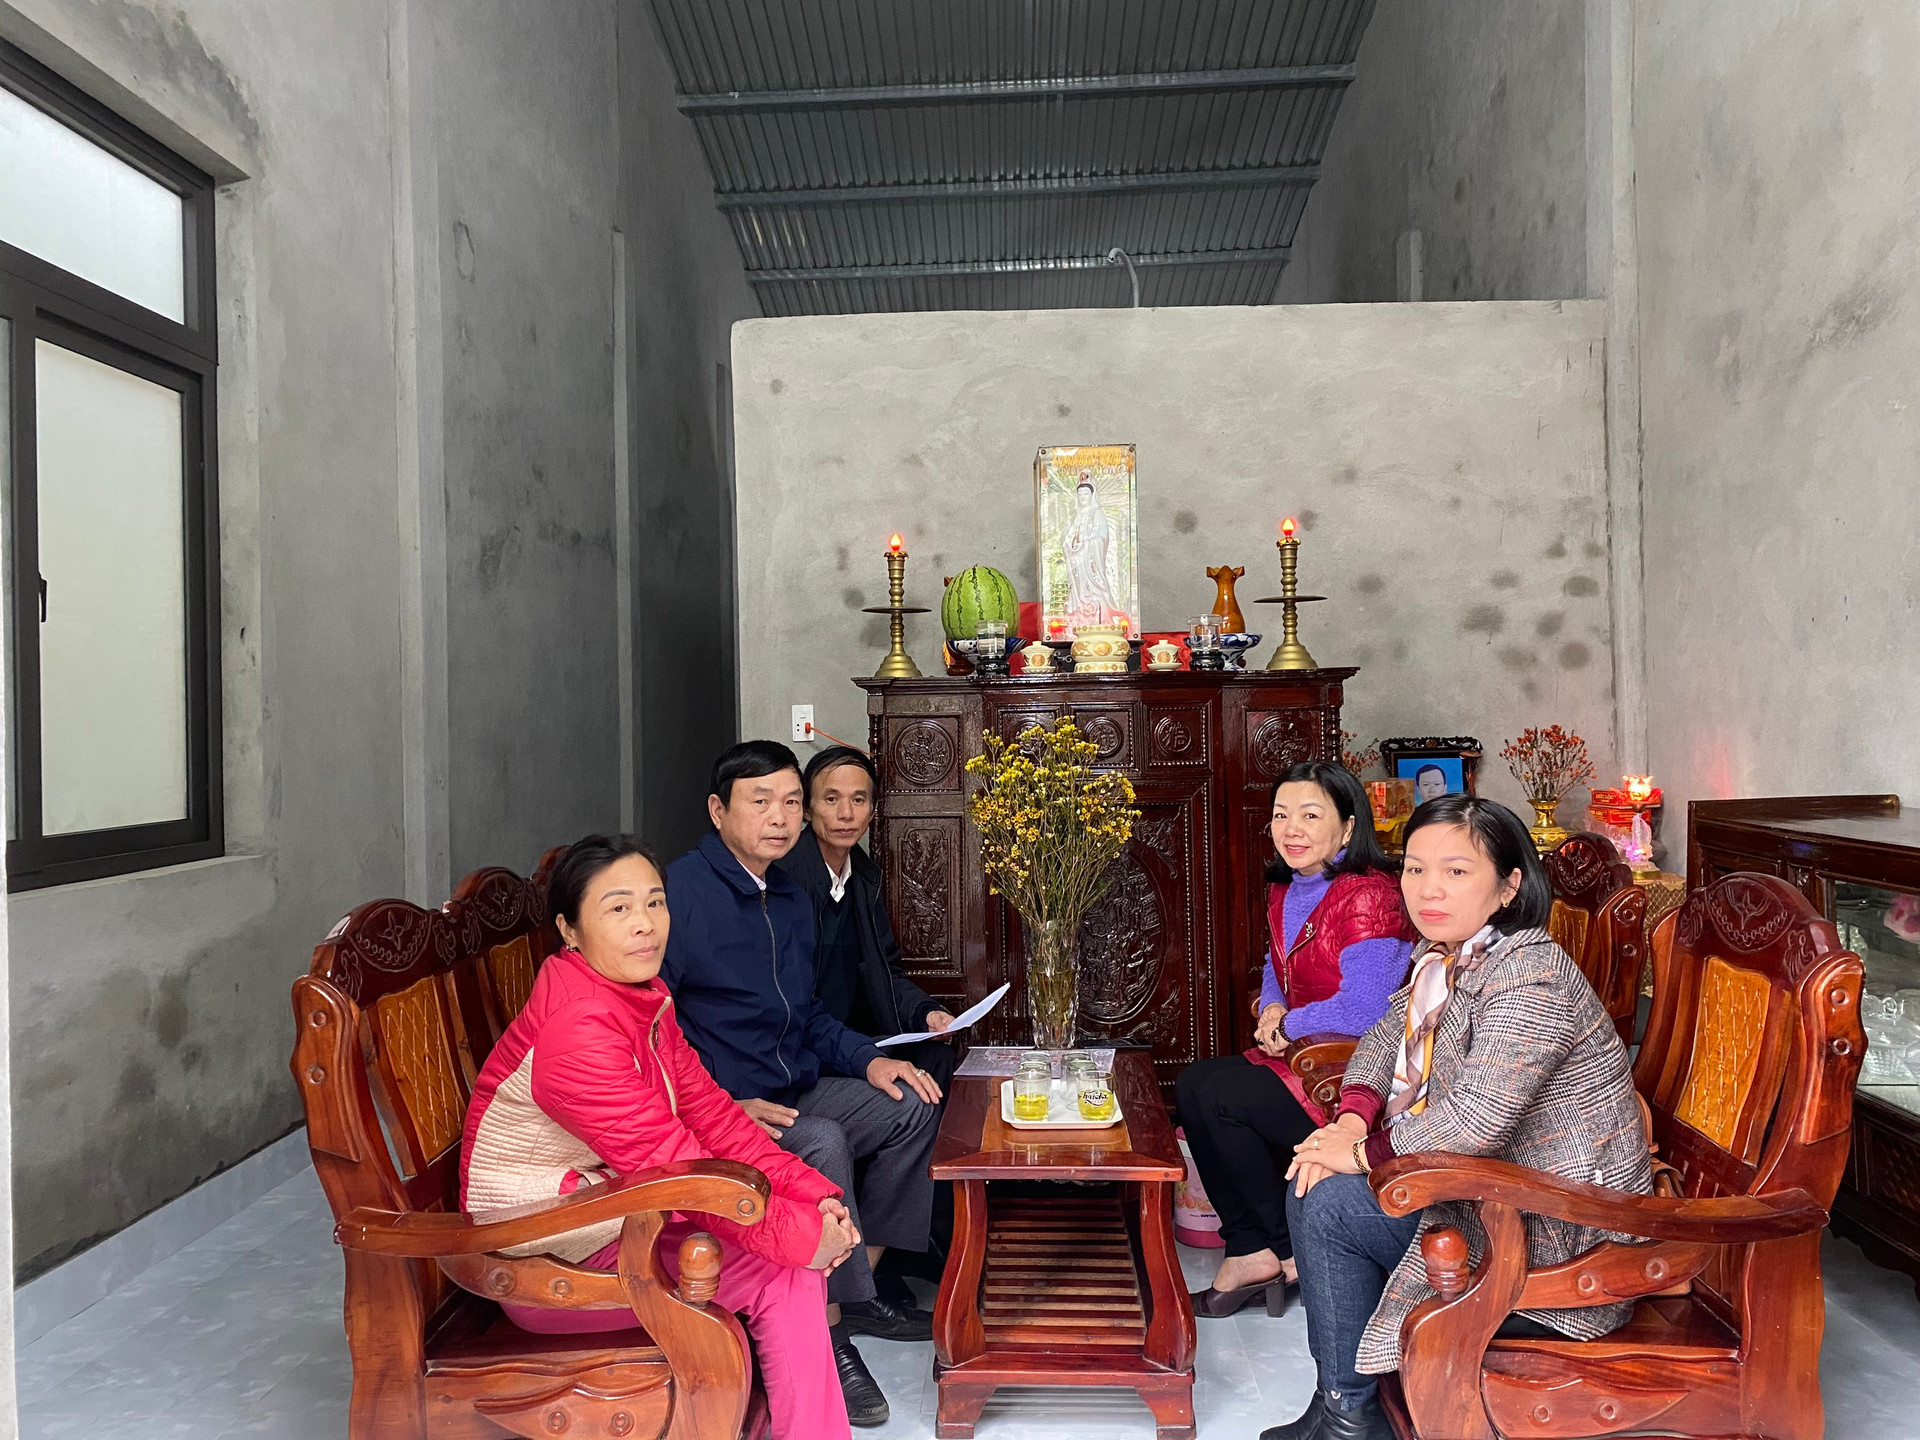 Ủy ban MTTQ Việt Nam phường 5 và cơ quan chức năng tiến hành nghiệm thu nhà Đại đoàn kết cho gia đình bà Lê Thị Đào.